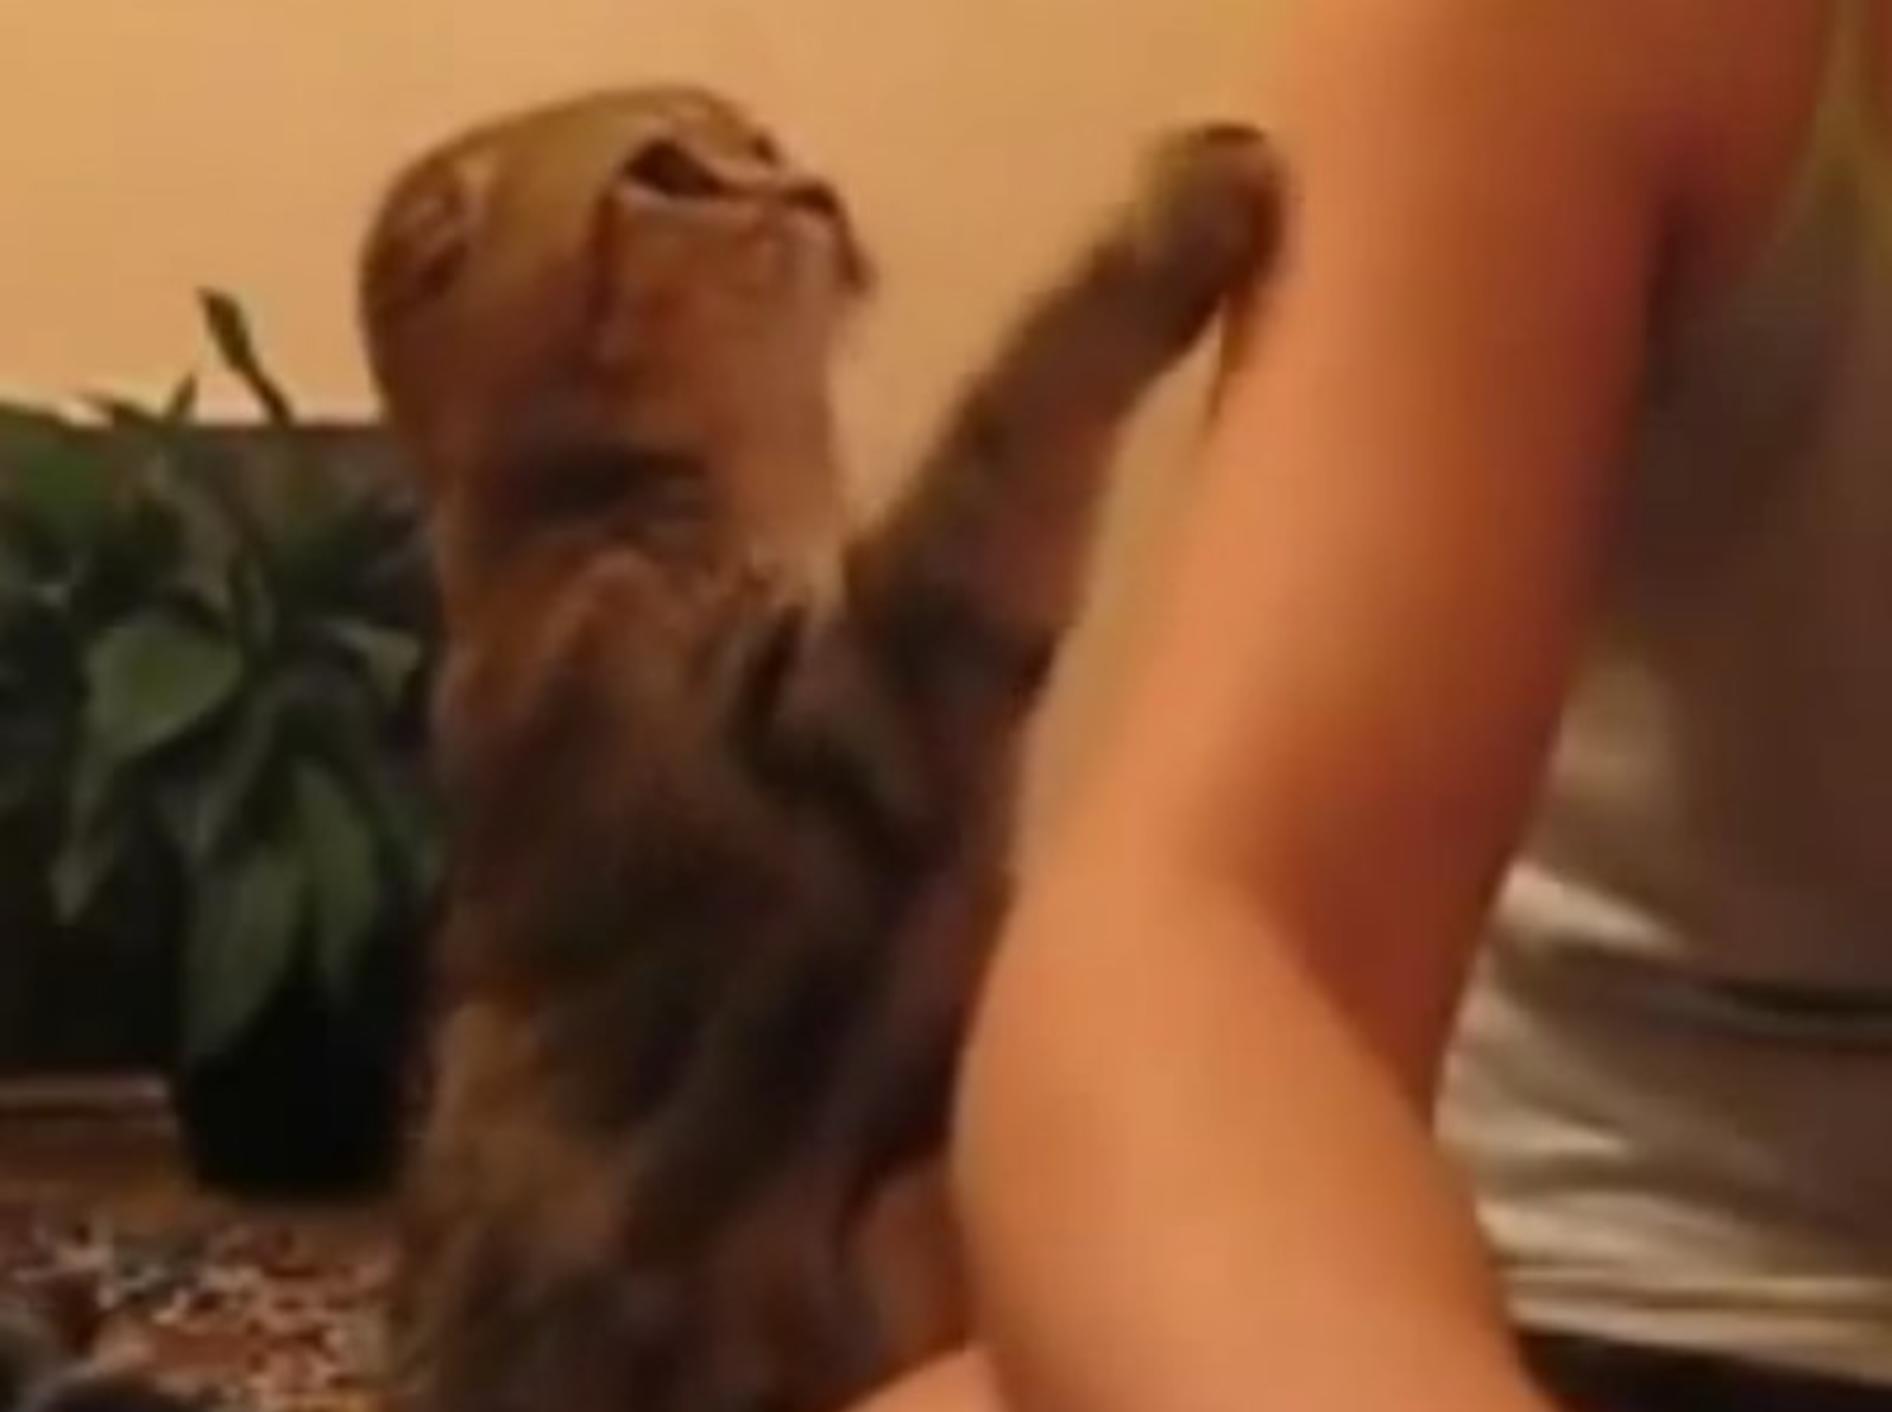 "Hey, noch nicht genug gestreichelt! Bitte mehr", scheint diese Katze sagen zu wollen – Youtube / Alex592842